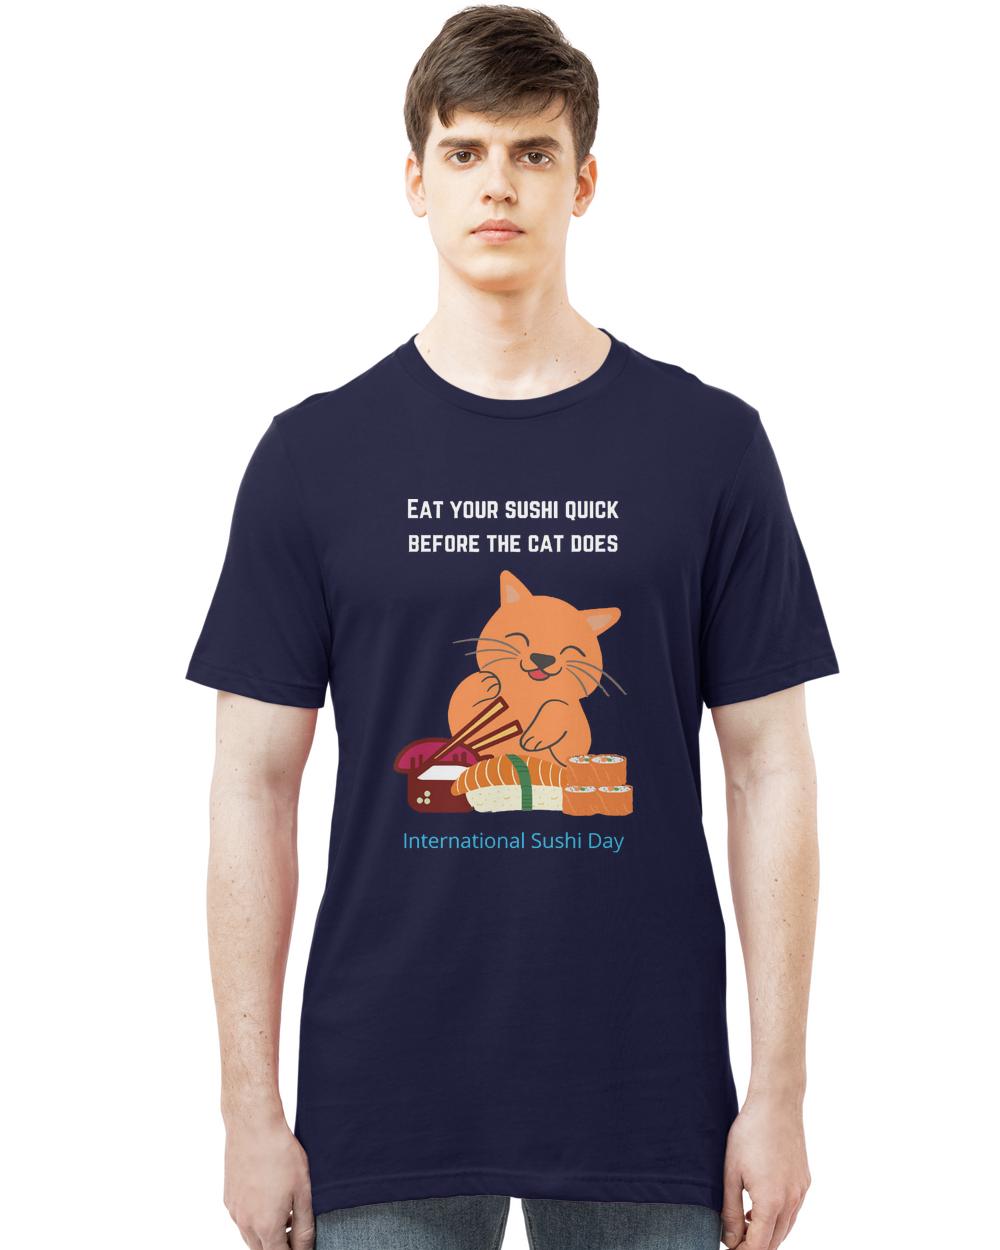 International Sushi Day 2020 T- Shirt Sushi cat T- Shirt